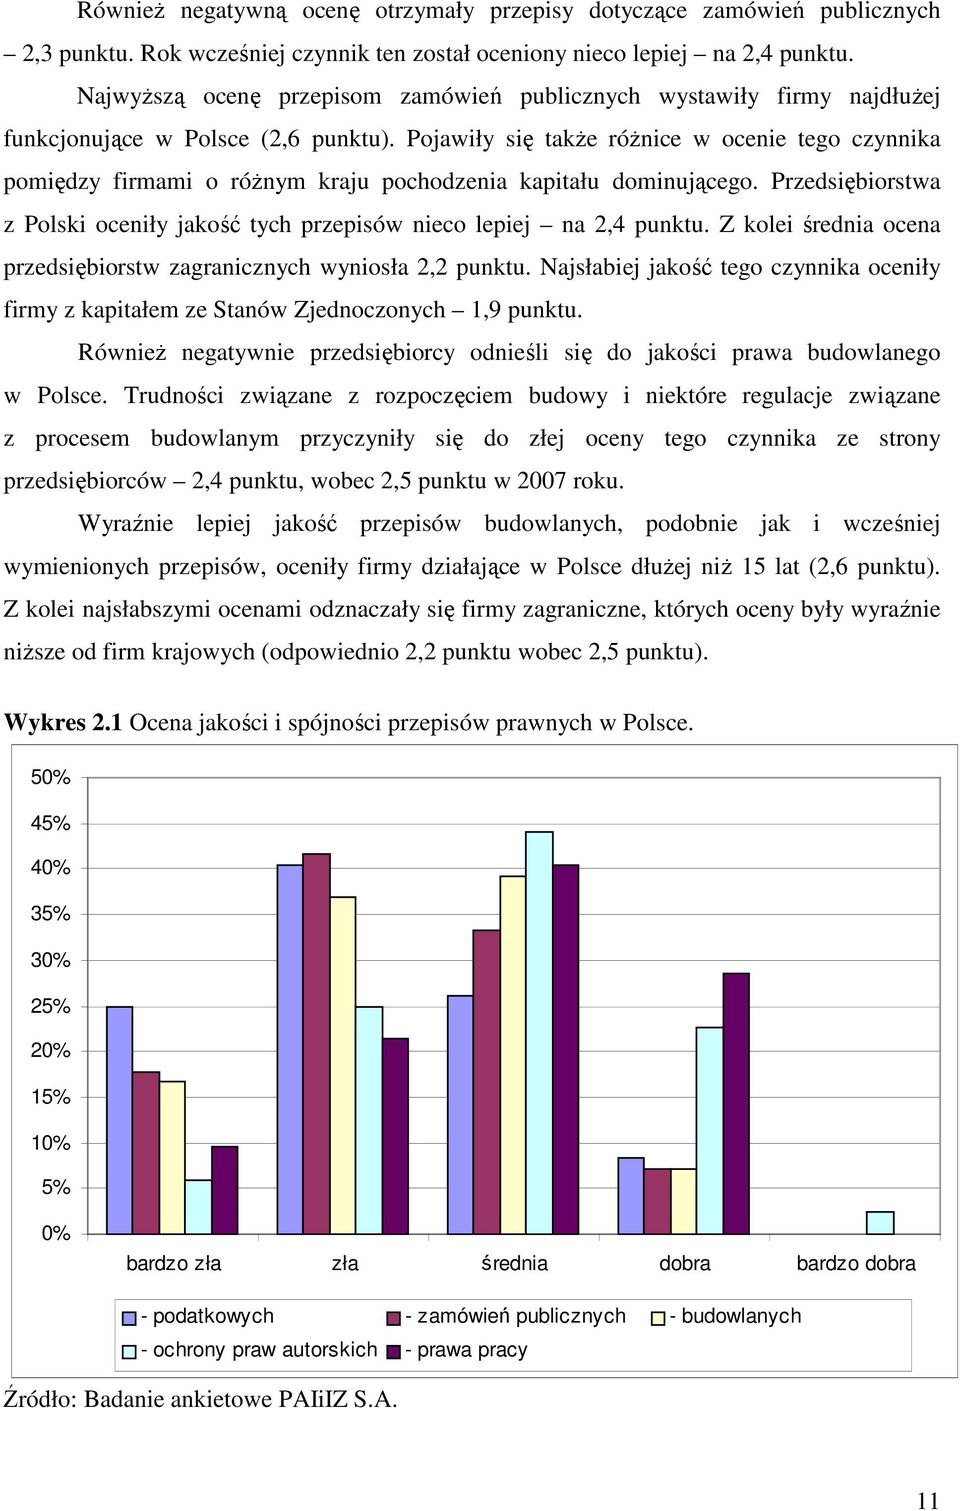 Pojawiły się takŝe róŝnice w ocenie tego czynnika pomiędzy firmami o róŝnym kraju pochodzenia kapitału dominującego. Przedsiębiorstwa z Polski oceniły jakość tych przepisów nieco lepiej na 2,4 punktu.